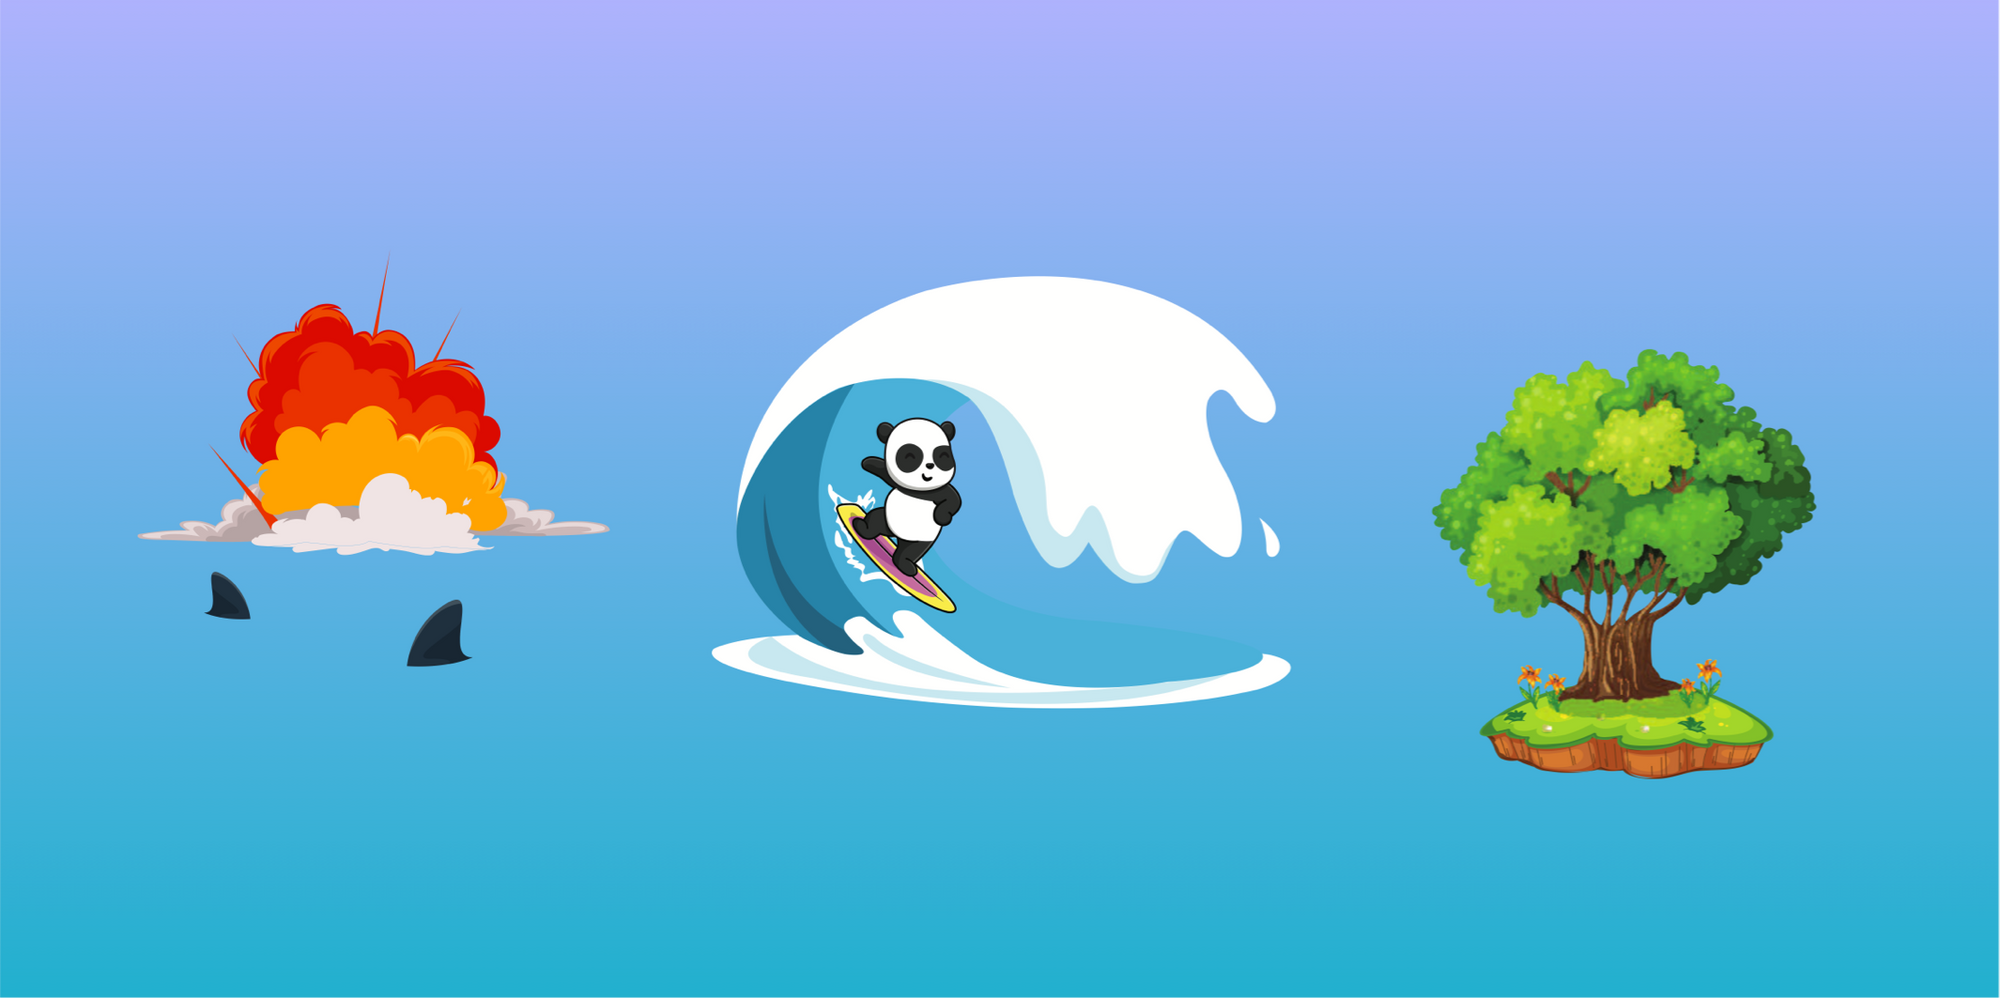 En panda surfar bort från en explosion i vatten med hajar, mot en grön ö med en stor ek och blommor.